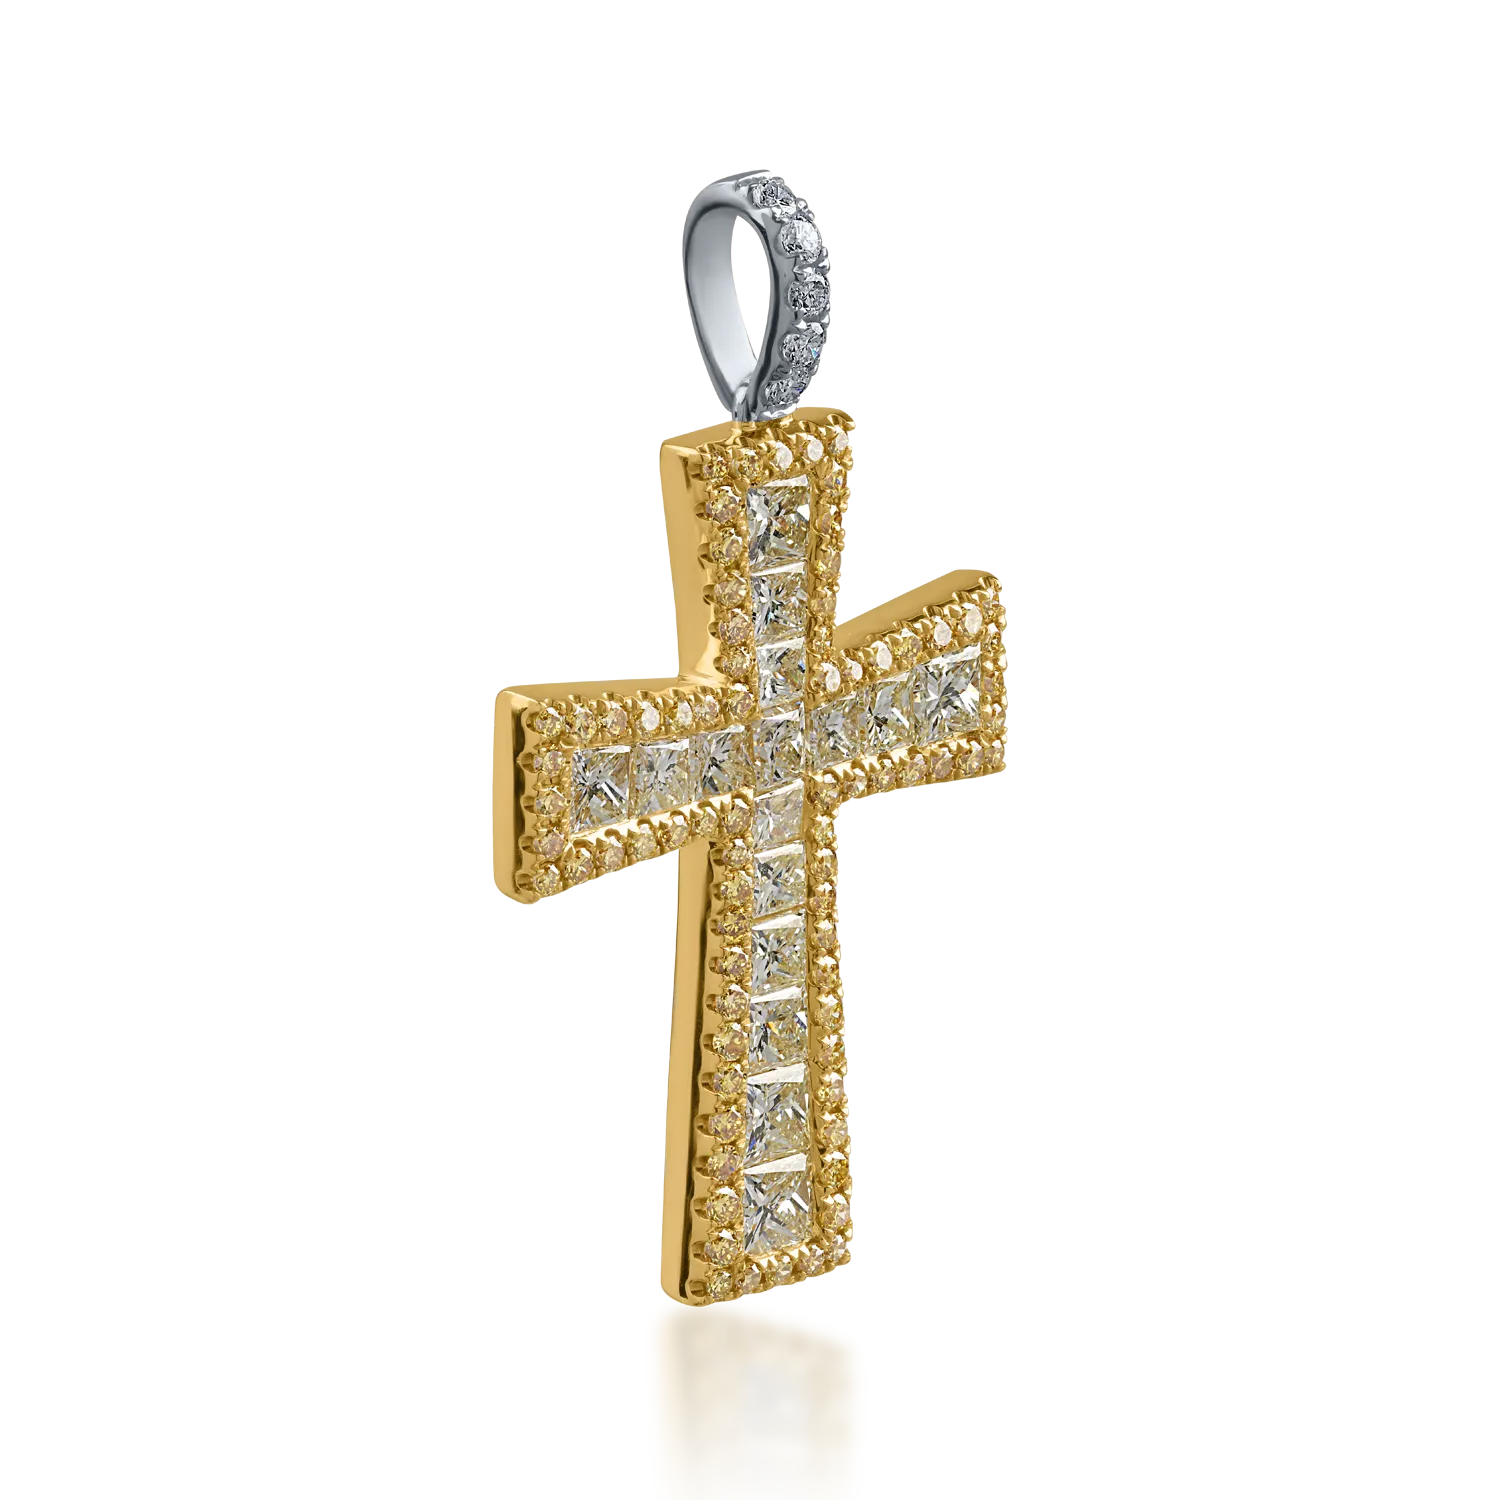 Zawieszka w kształcie krzyża z biało-żółtego złota z 2.5ct żółtymi diamentami i przezroczystymi diamentami o masie 0.08ct